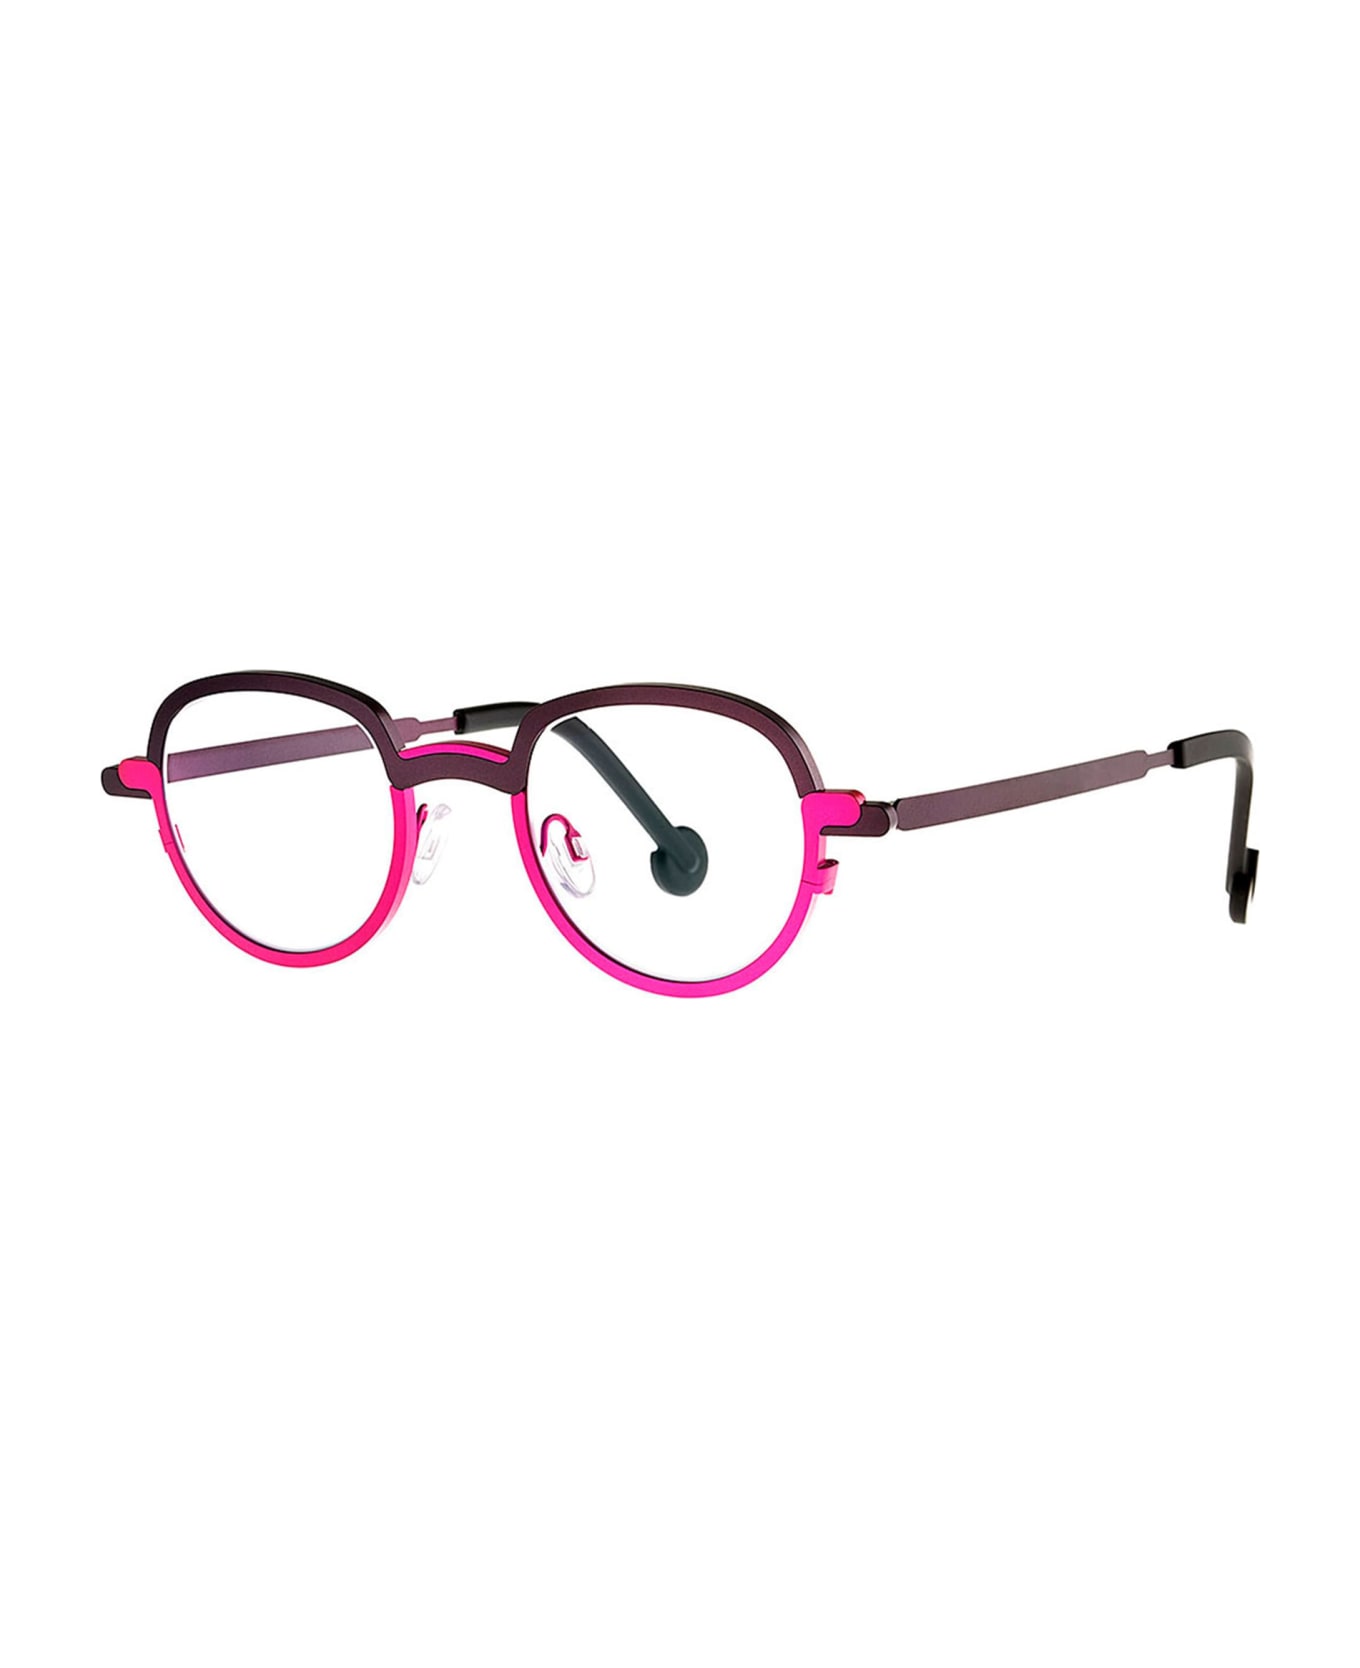 Theo Eyewear Mong Kok - 284 Rx Glasses - pink アイウェア